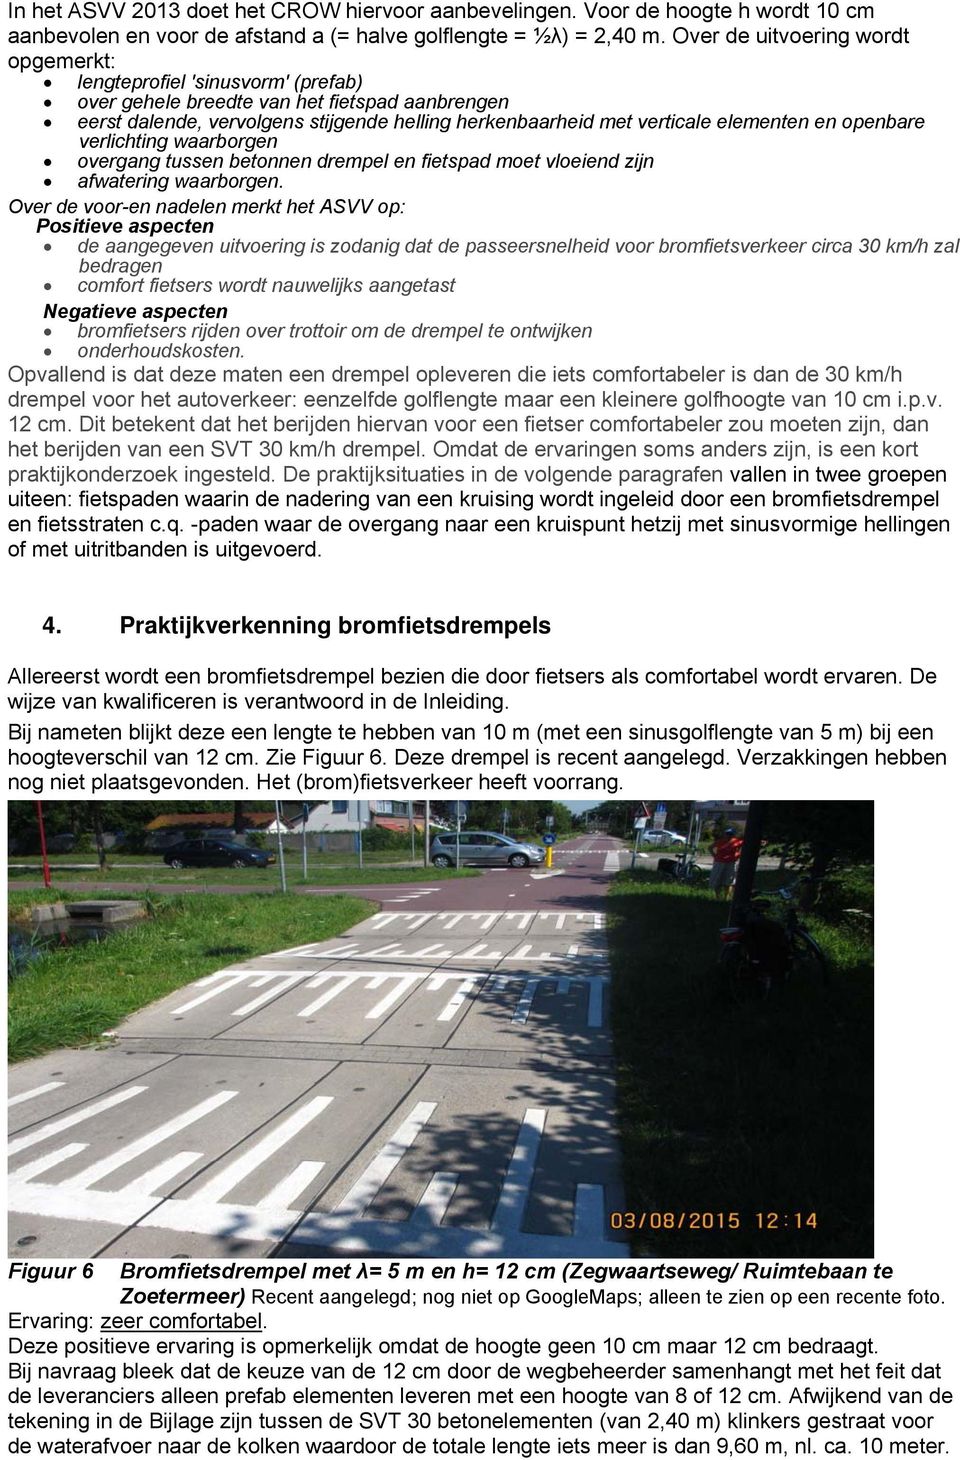 elementen en openbare verlichting waarborgen overgang tussen betonnen drempel en fietspad moet vloeiend zijn afwatering waarborgen.